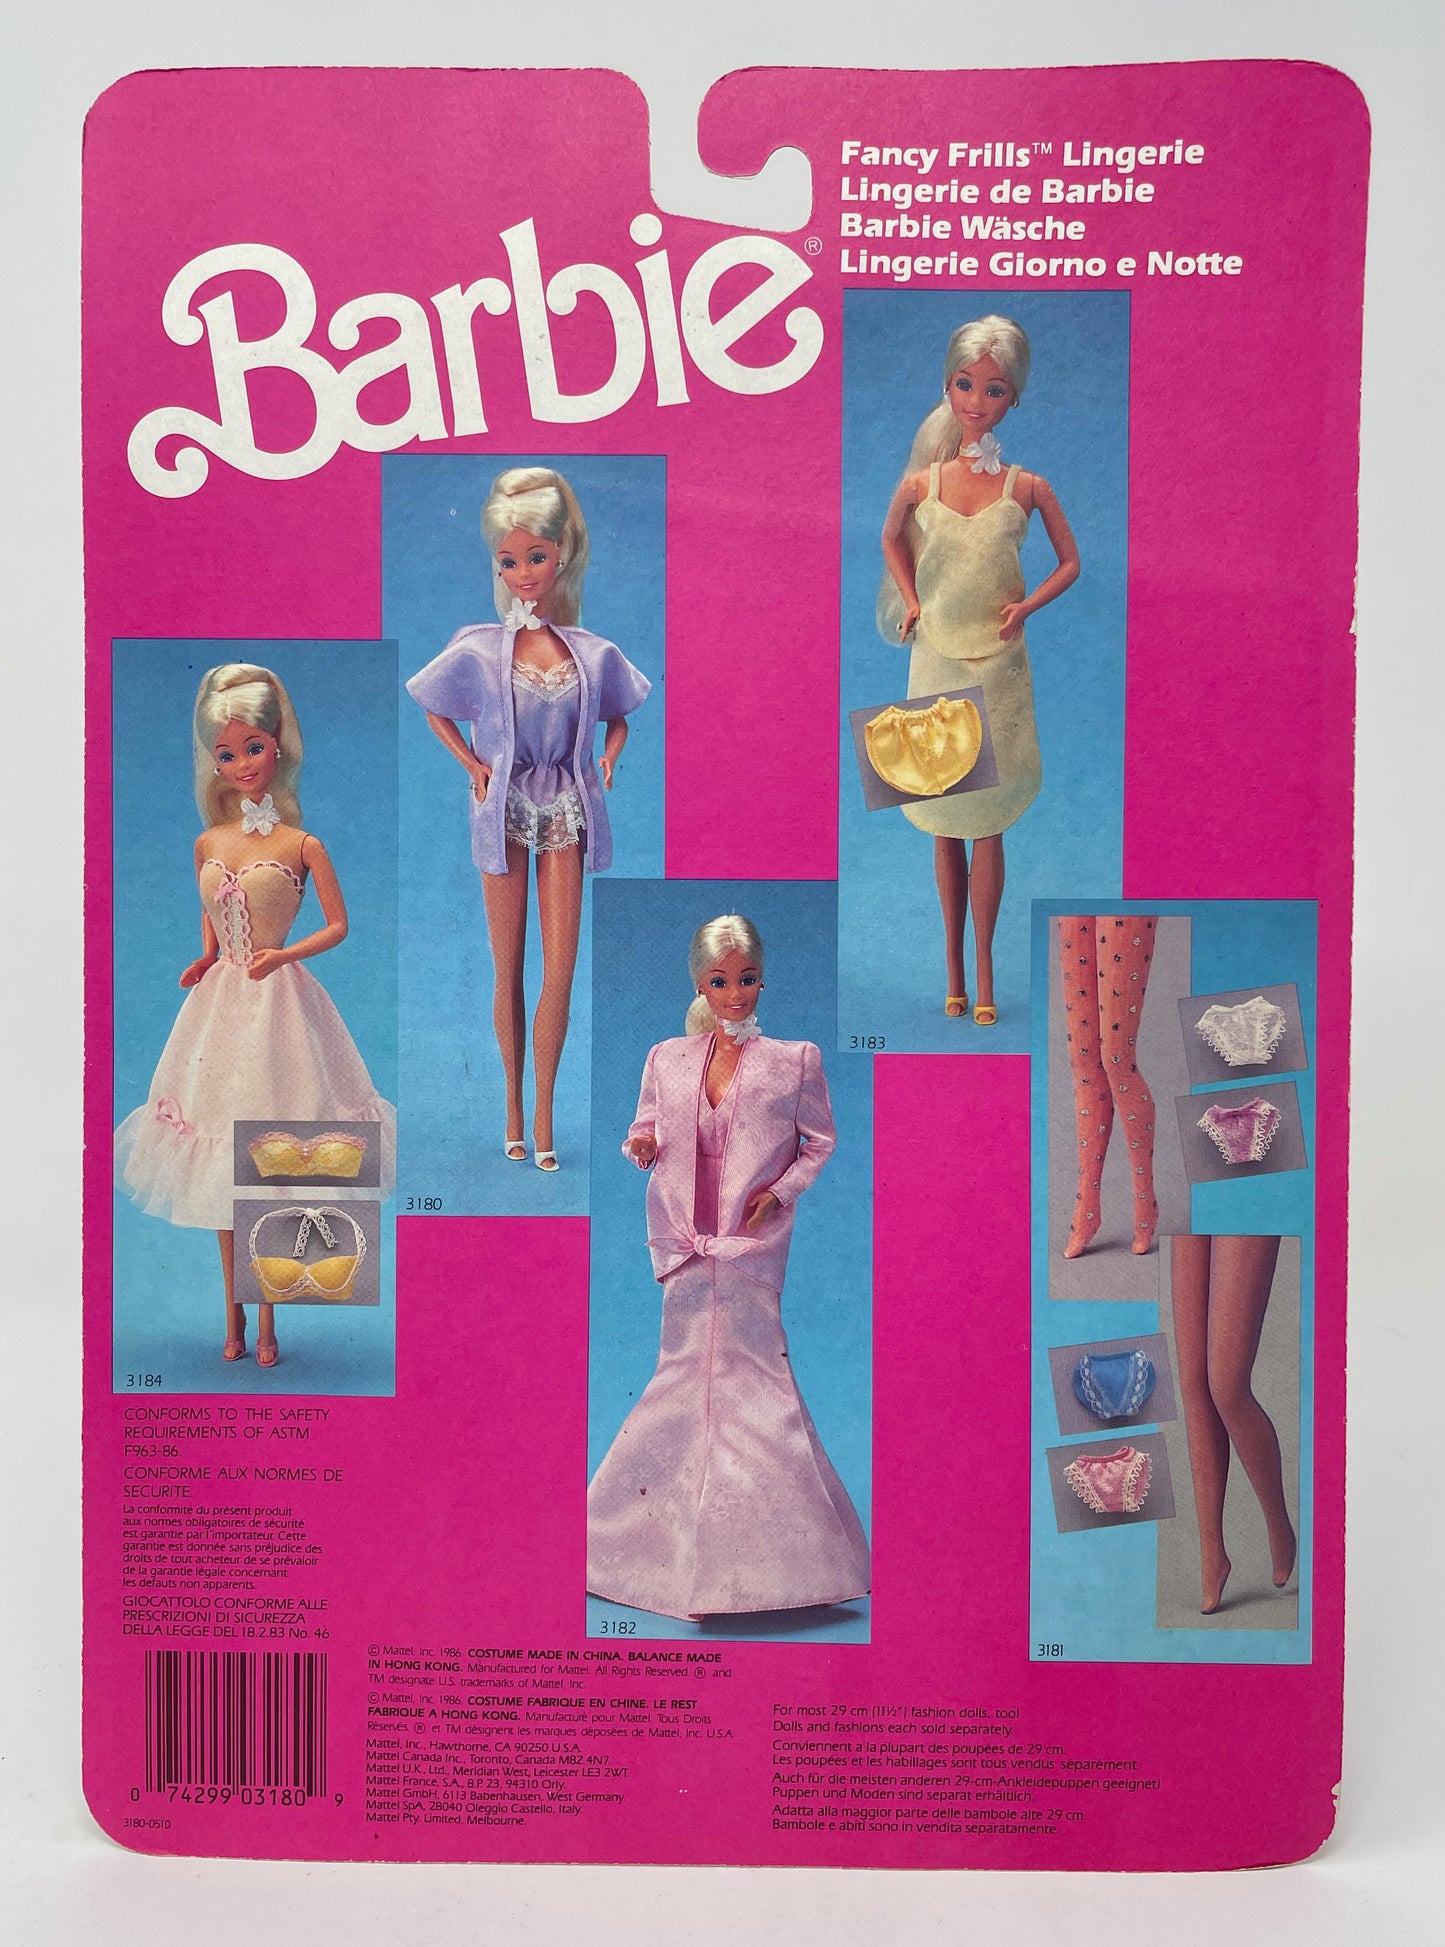 BARBIE - FANCY FRILLS LAVENDER LINGERIE 3180 - MATTEL 1986 (1 OF 2)